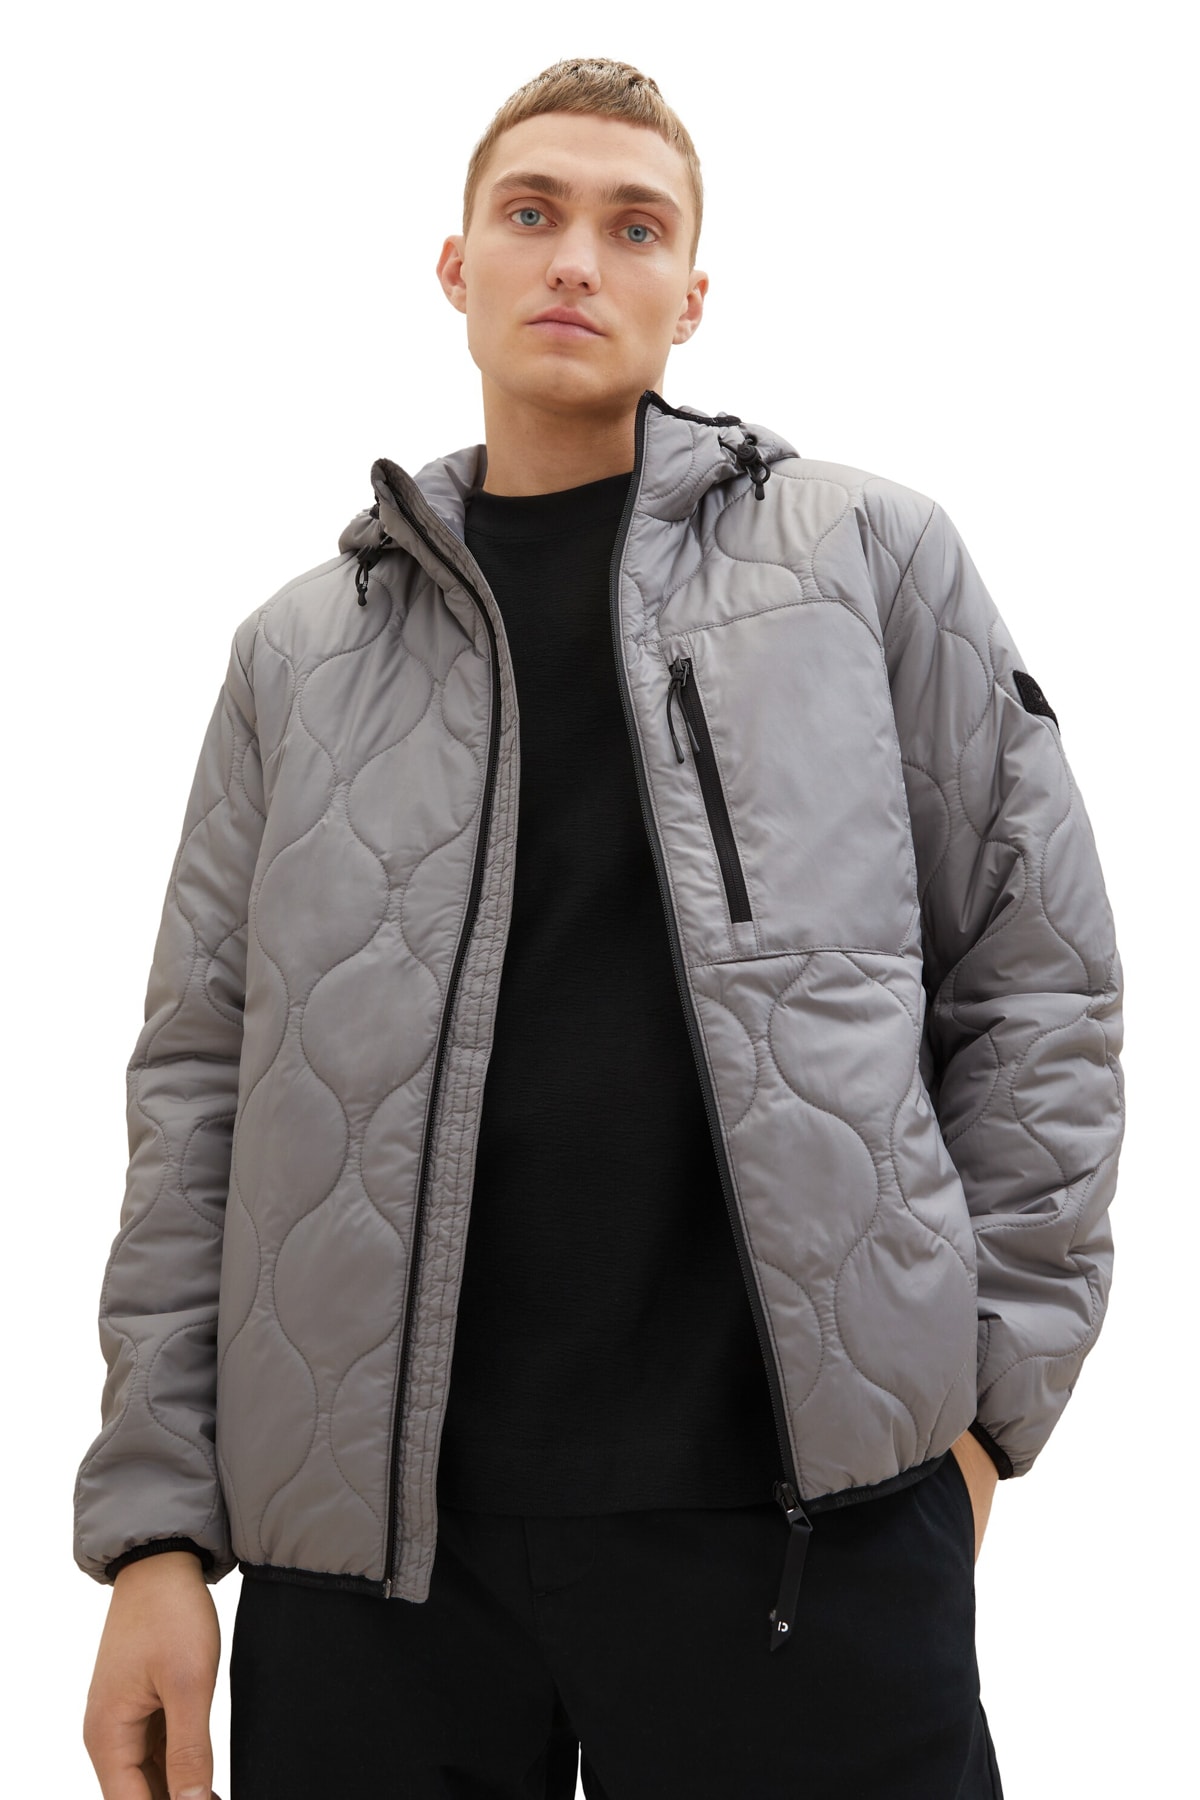 Зимняя куртка - Серая - Пуховик Tom Tailor Denim, серый толстовка tom tailor размер l серый